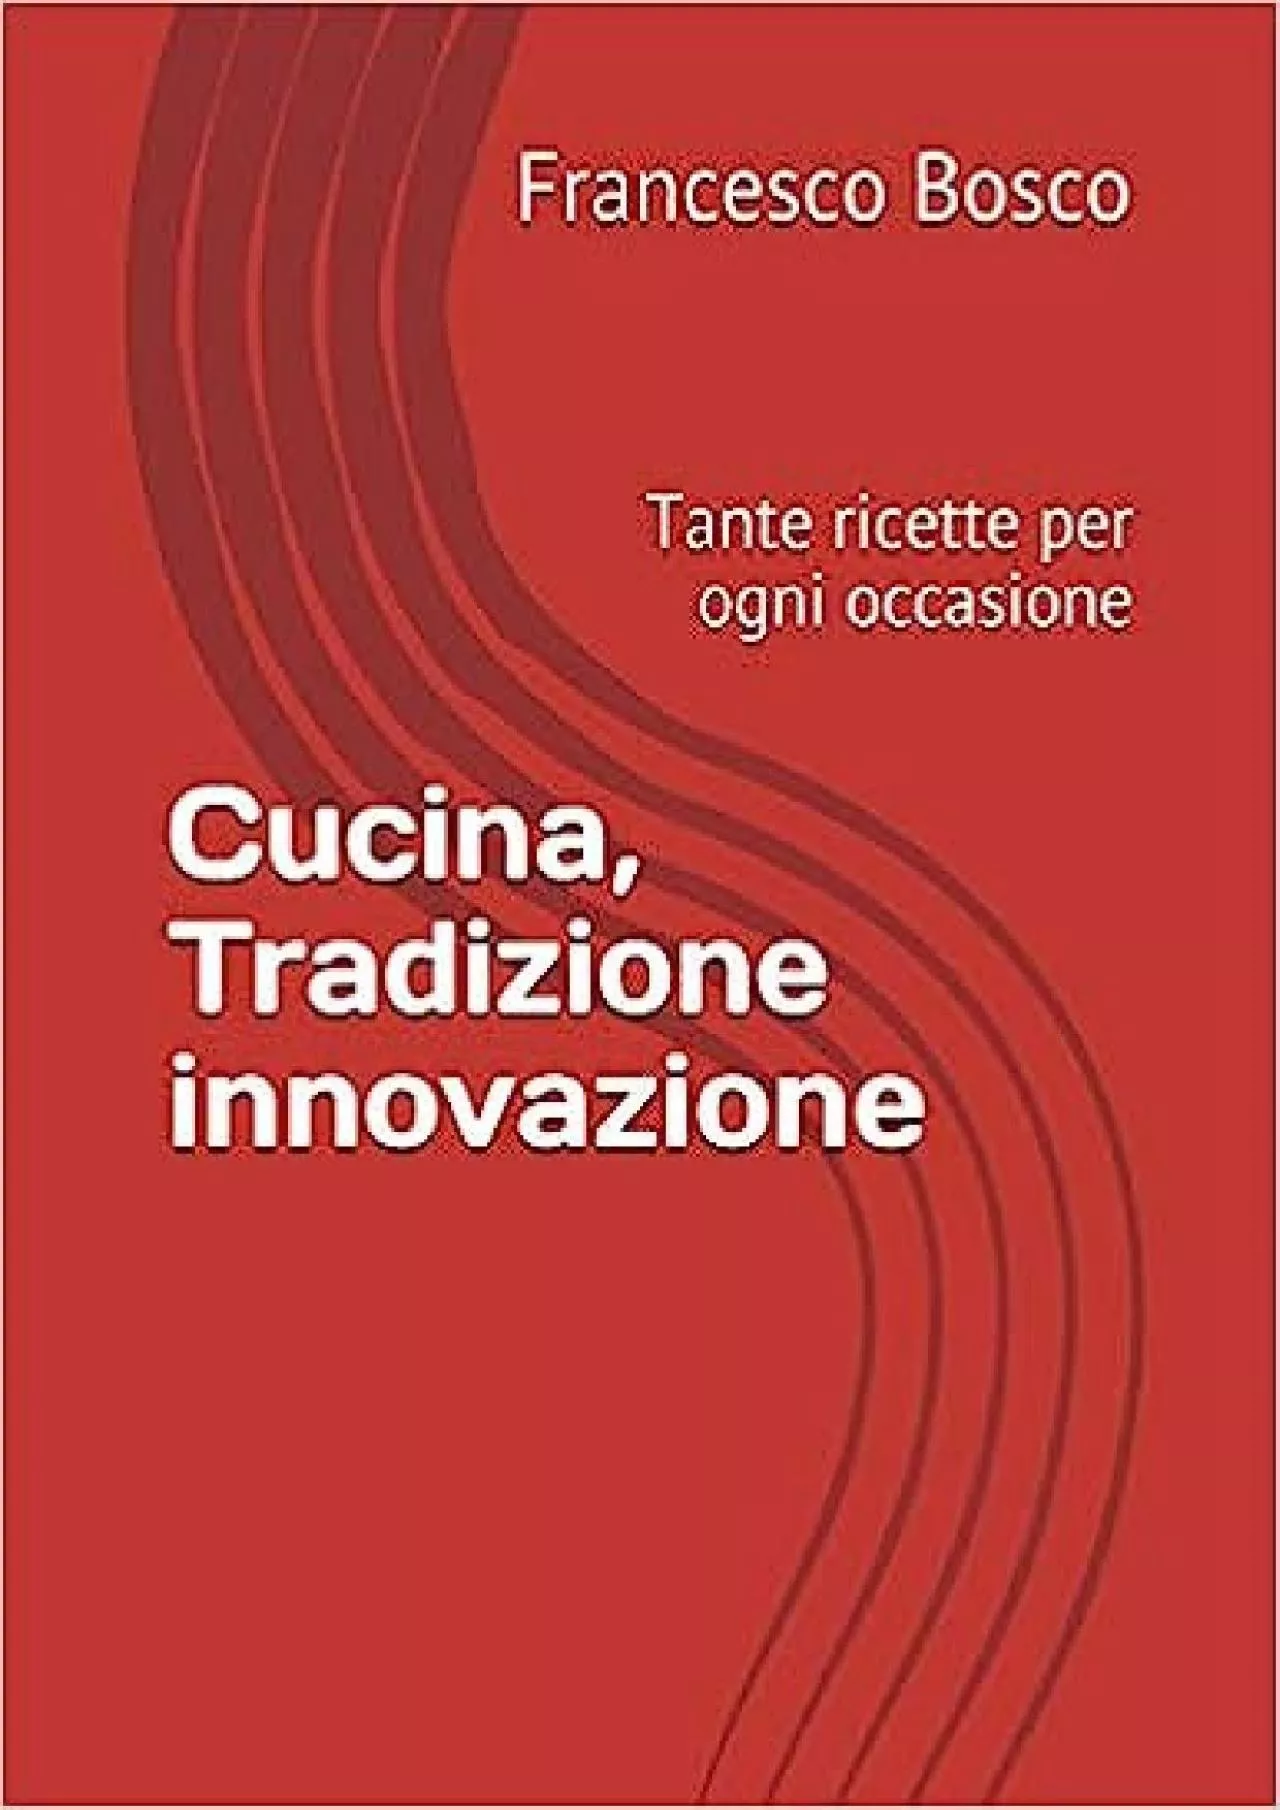 [DOWNLOAD] Cucina, Tradizione innovazione: Tante ricette per ogni occasione Italian Edition